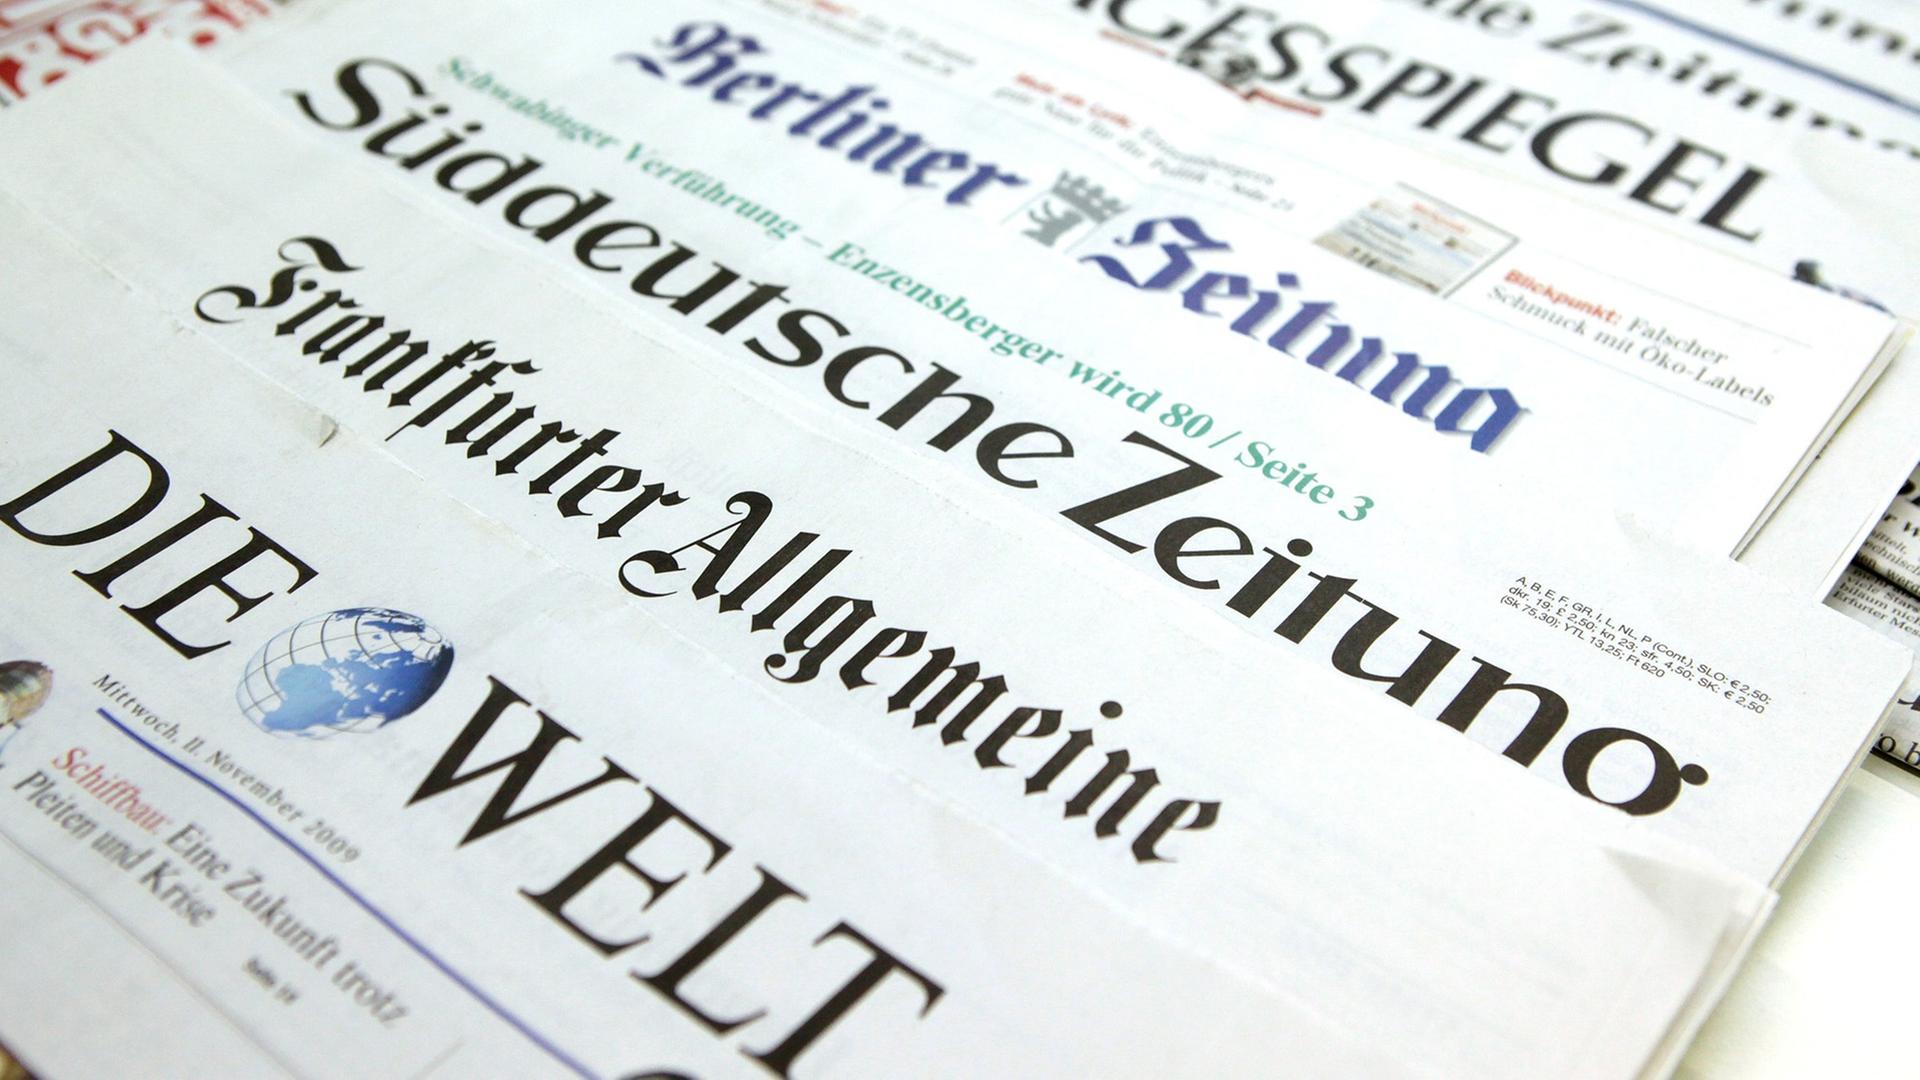 Auf einem Tisch liegen deutsche Tageszeitungen so versetzt, dass jeweils nur der Titel zu lesen ist, ganz vorne "Die Welt", "Frankfurter Allgemeine Zeitung" und "Süddeutsche Zeitung"